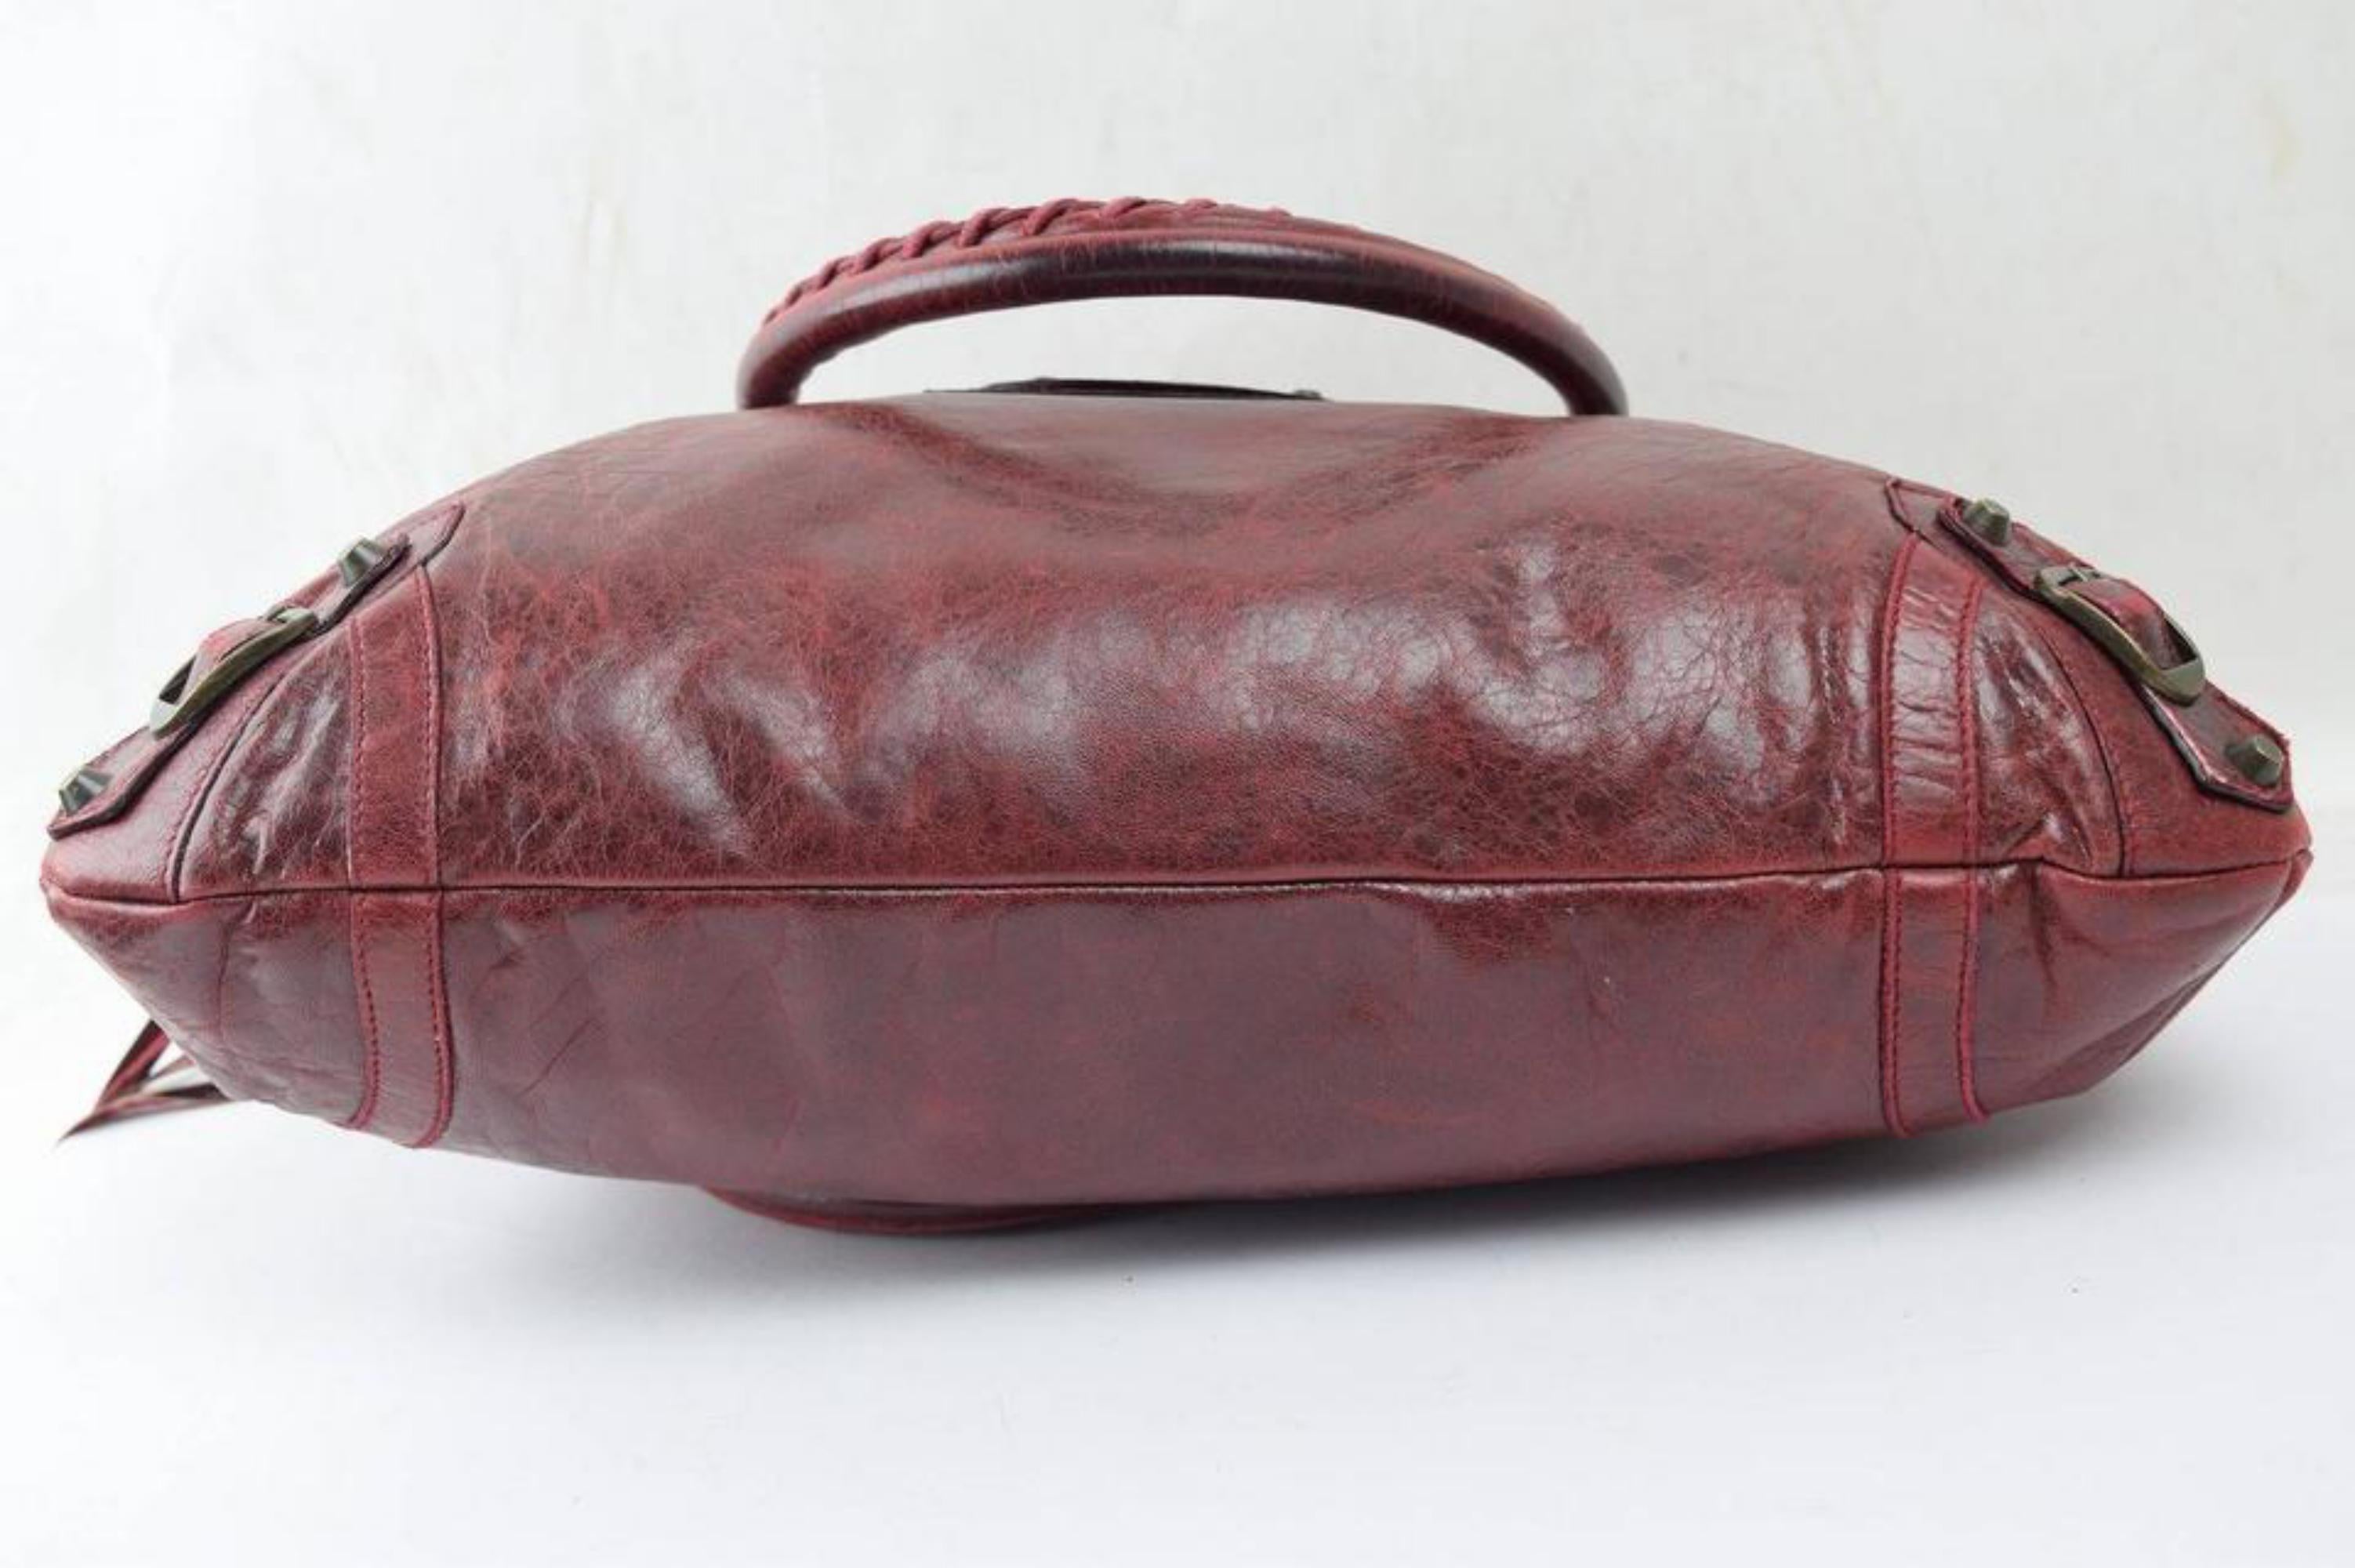 Balenciaga Bordeaux Chevre Purse Handbag 866829 Red Leather Satchel For Sale 2